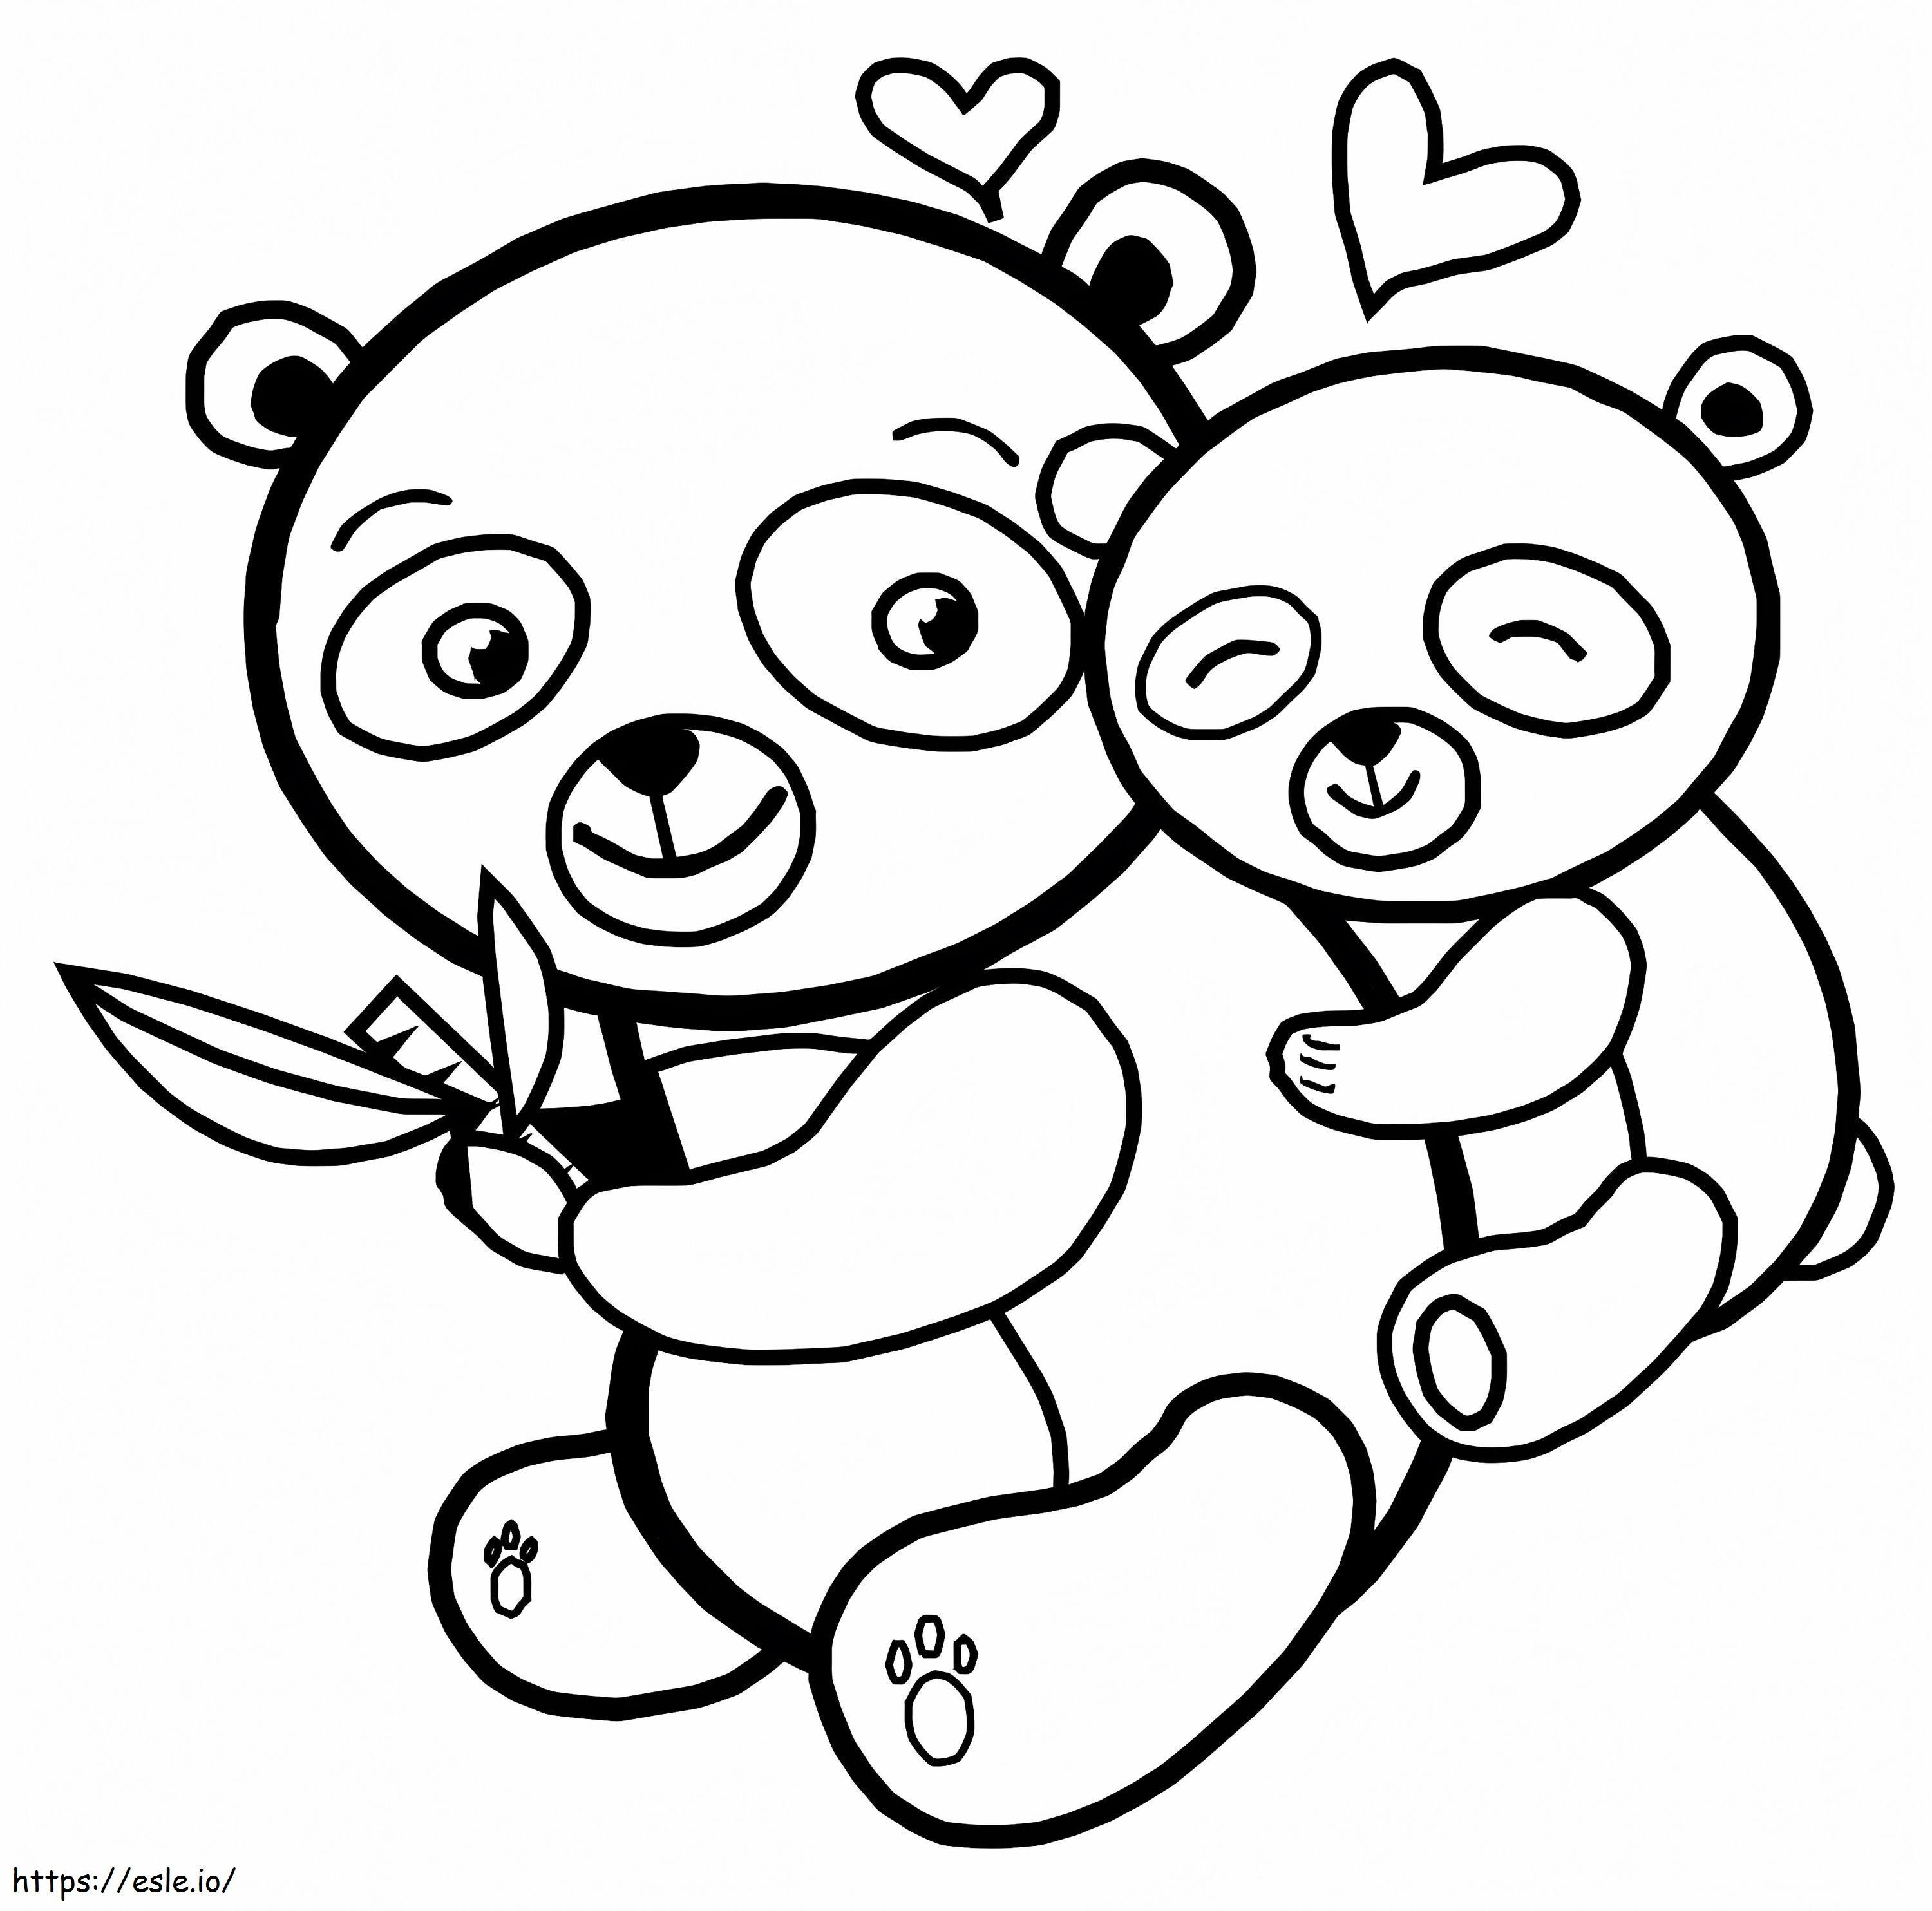 Ibu Panda dan Bayinya Gambar Mewarnai